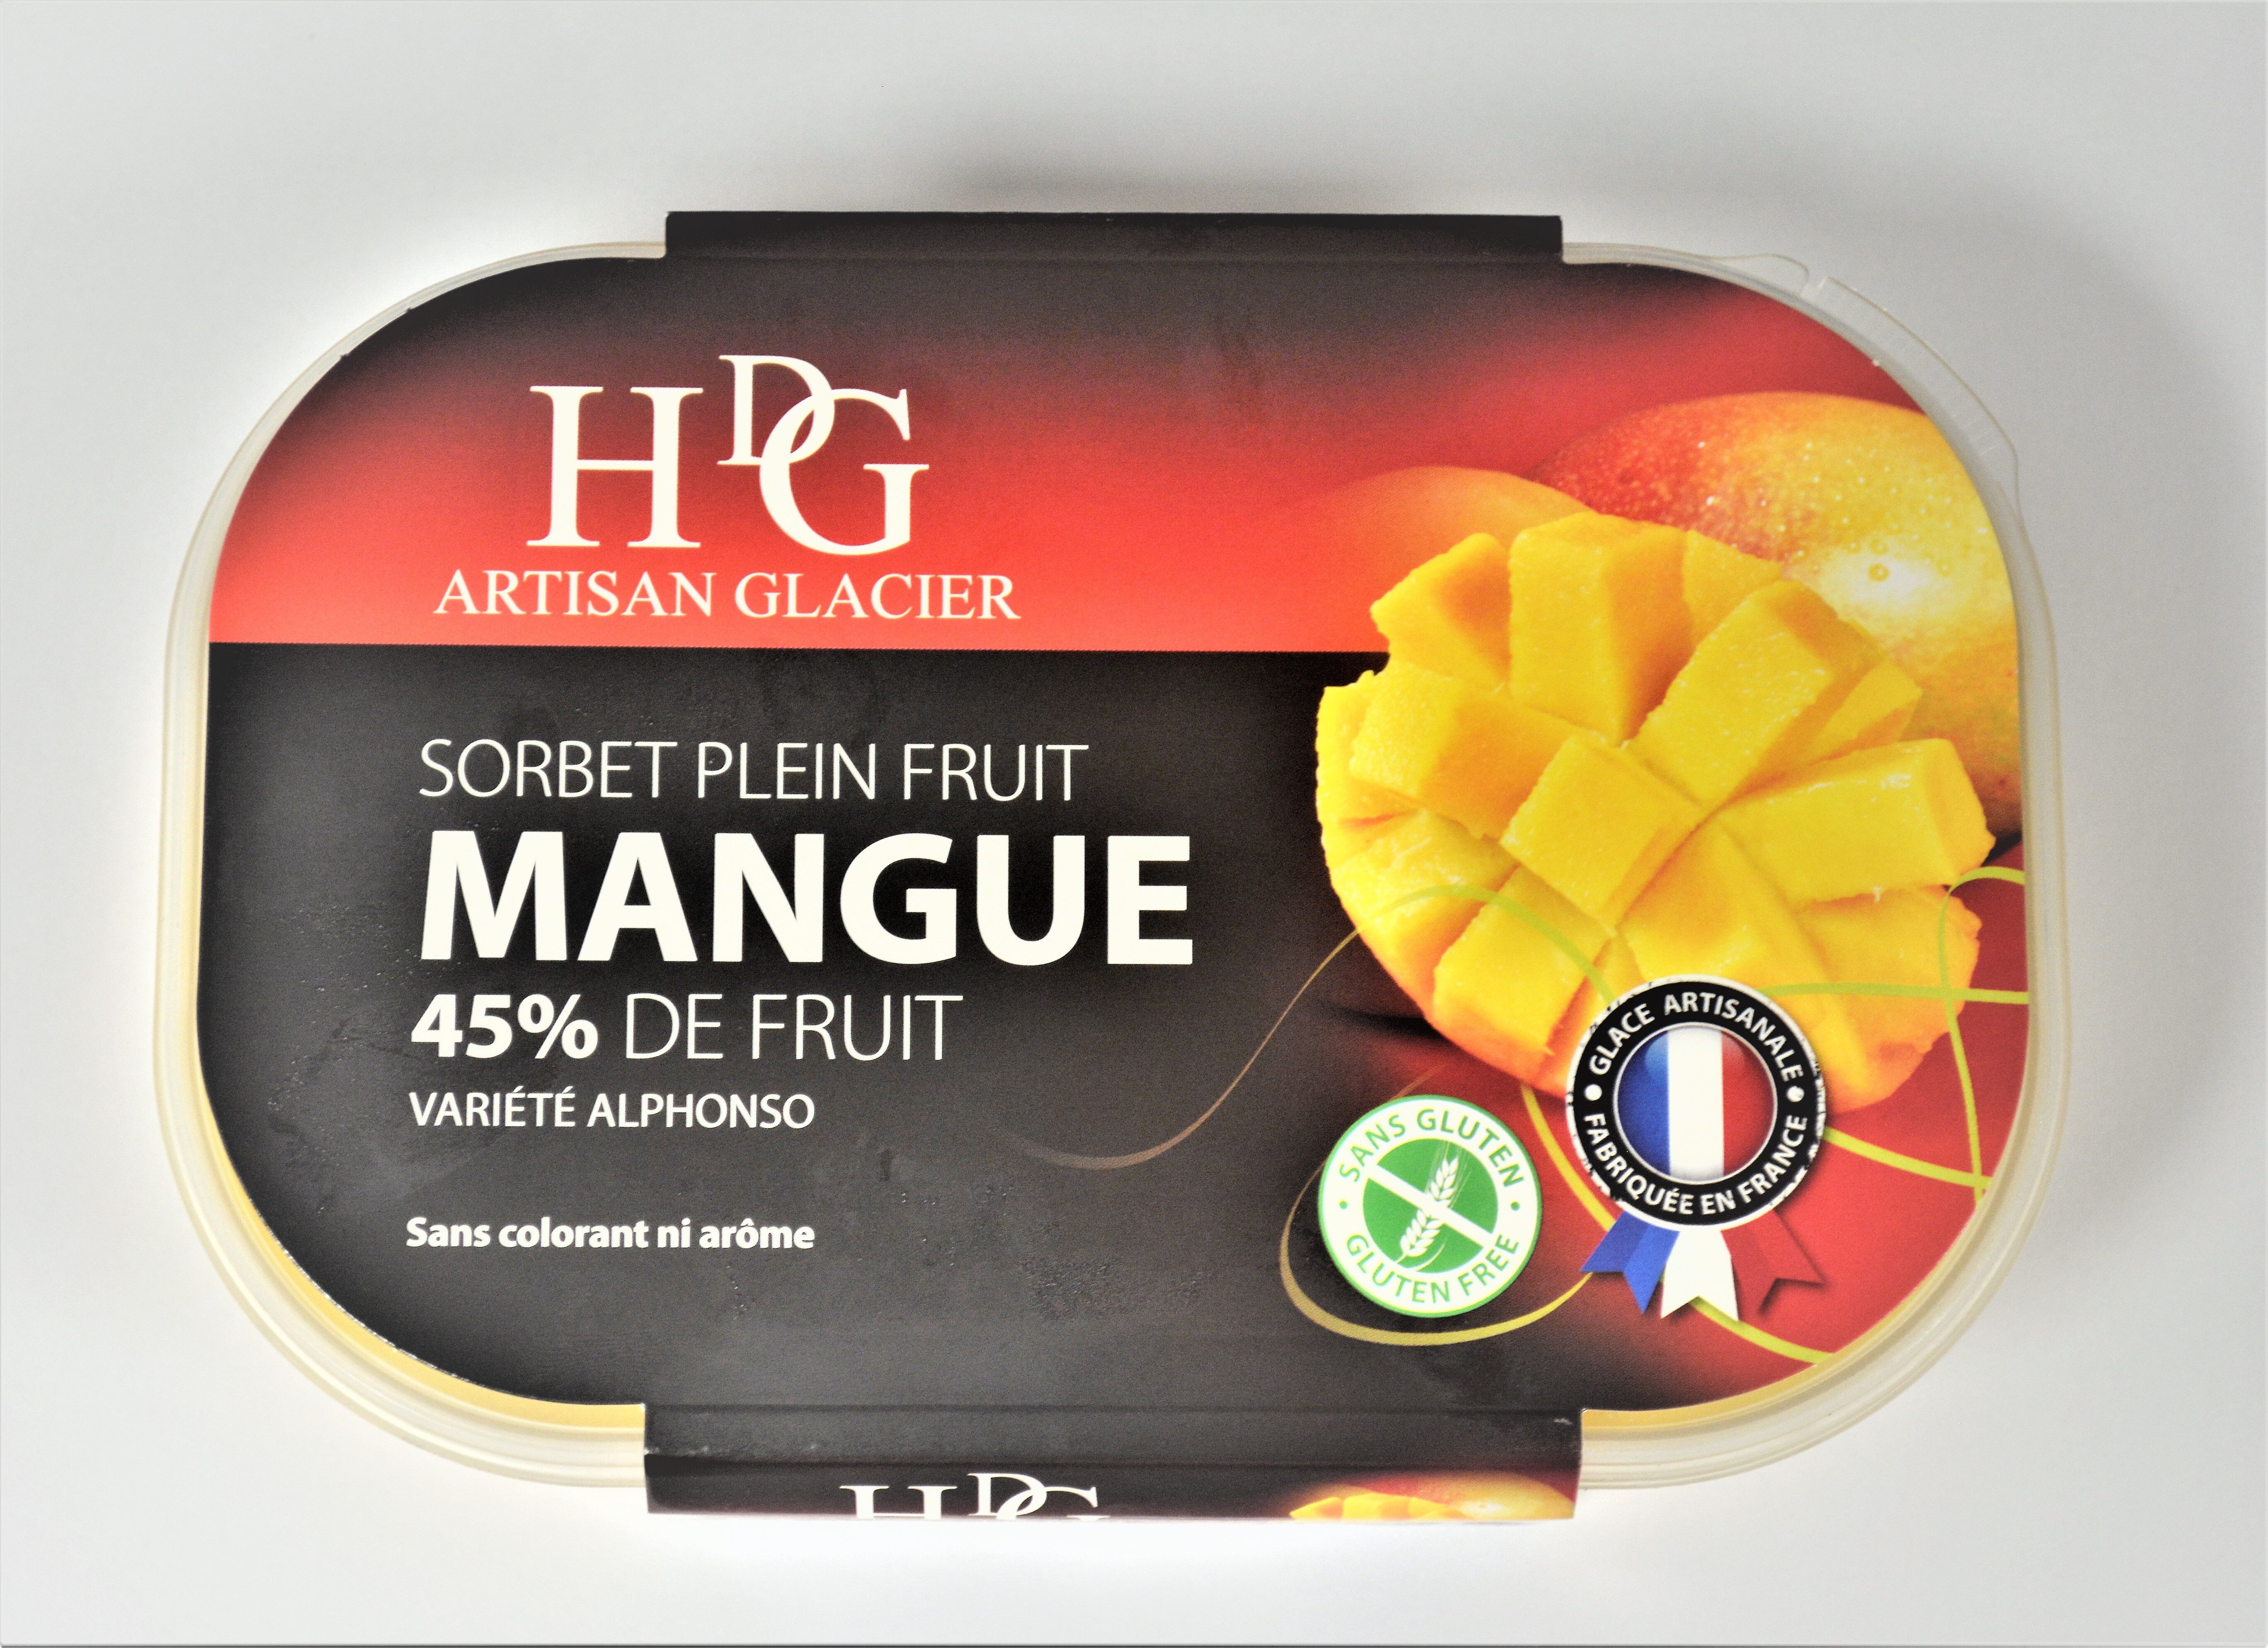 Sorbet plein fruit MANGUE, 45 % de fruit - Producto - fr